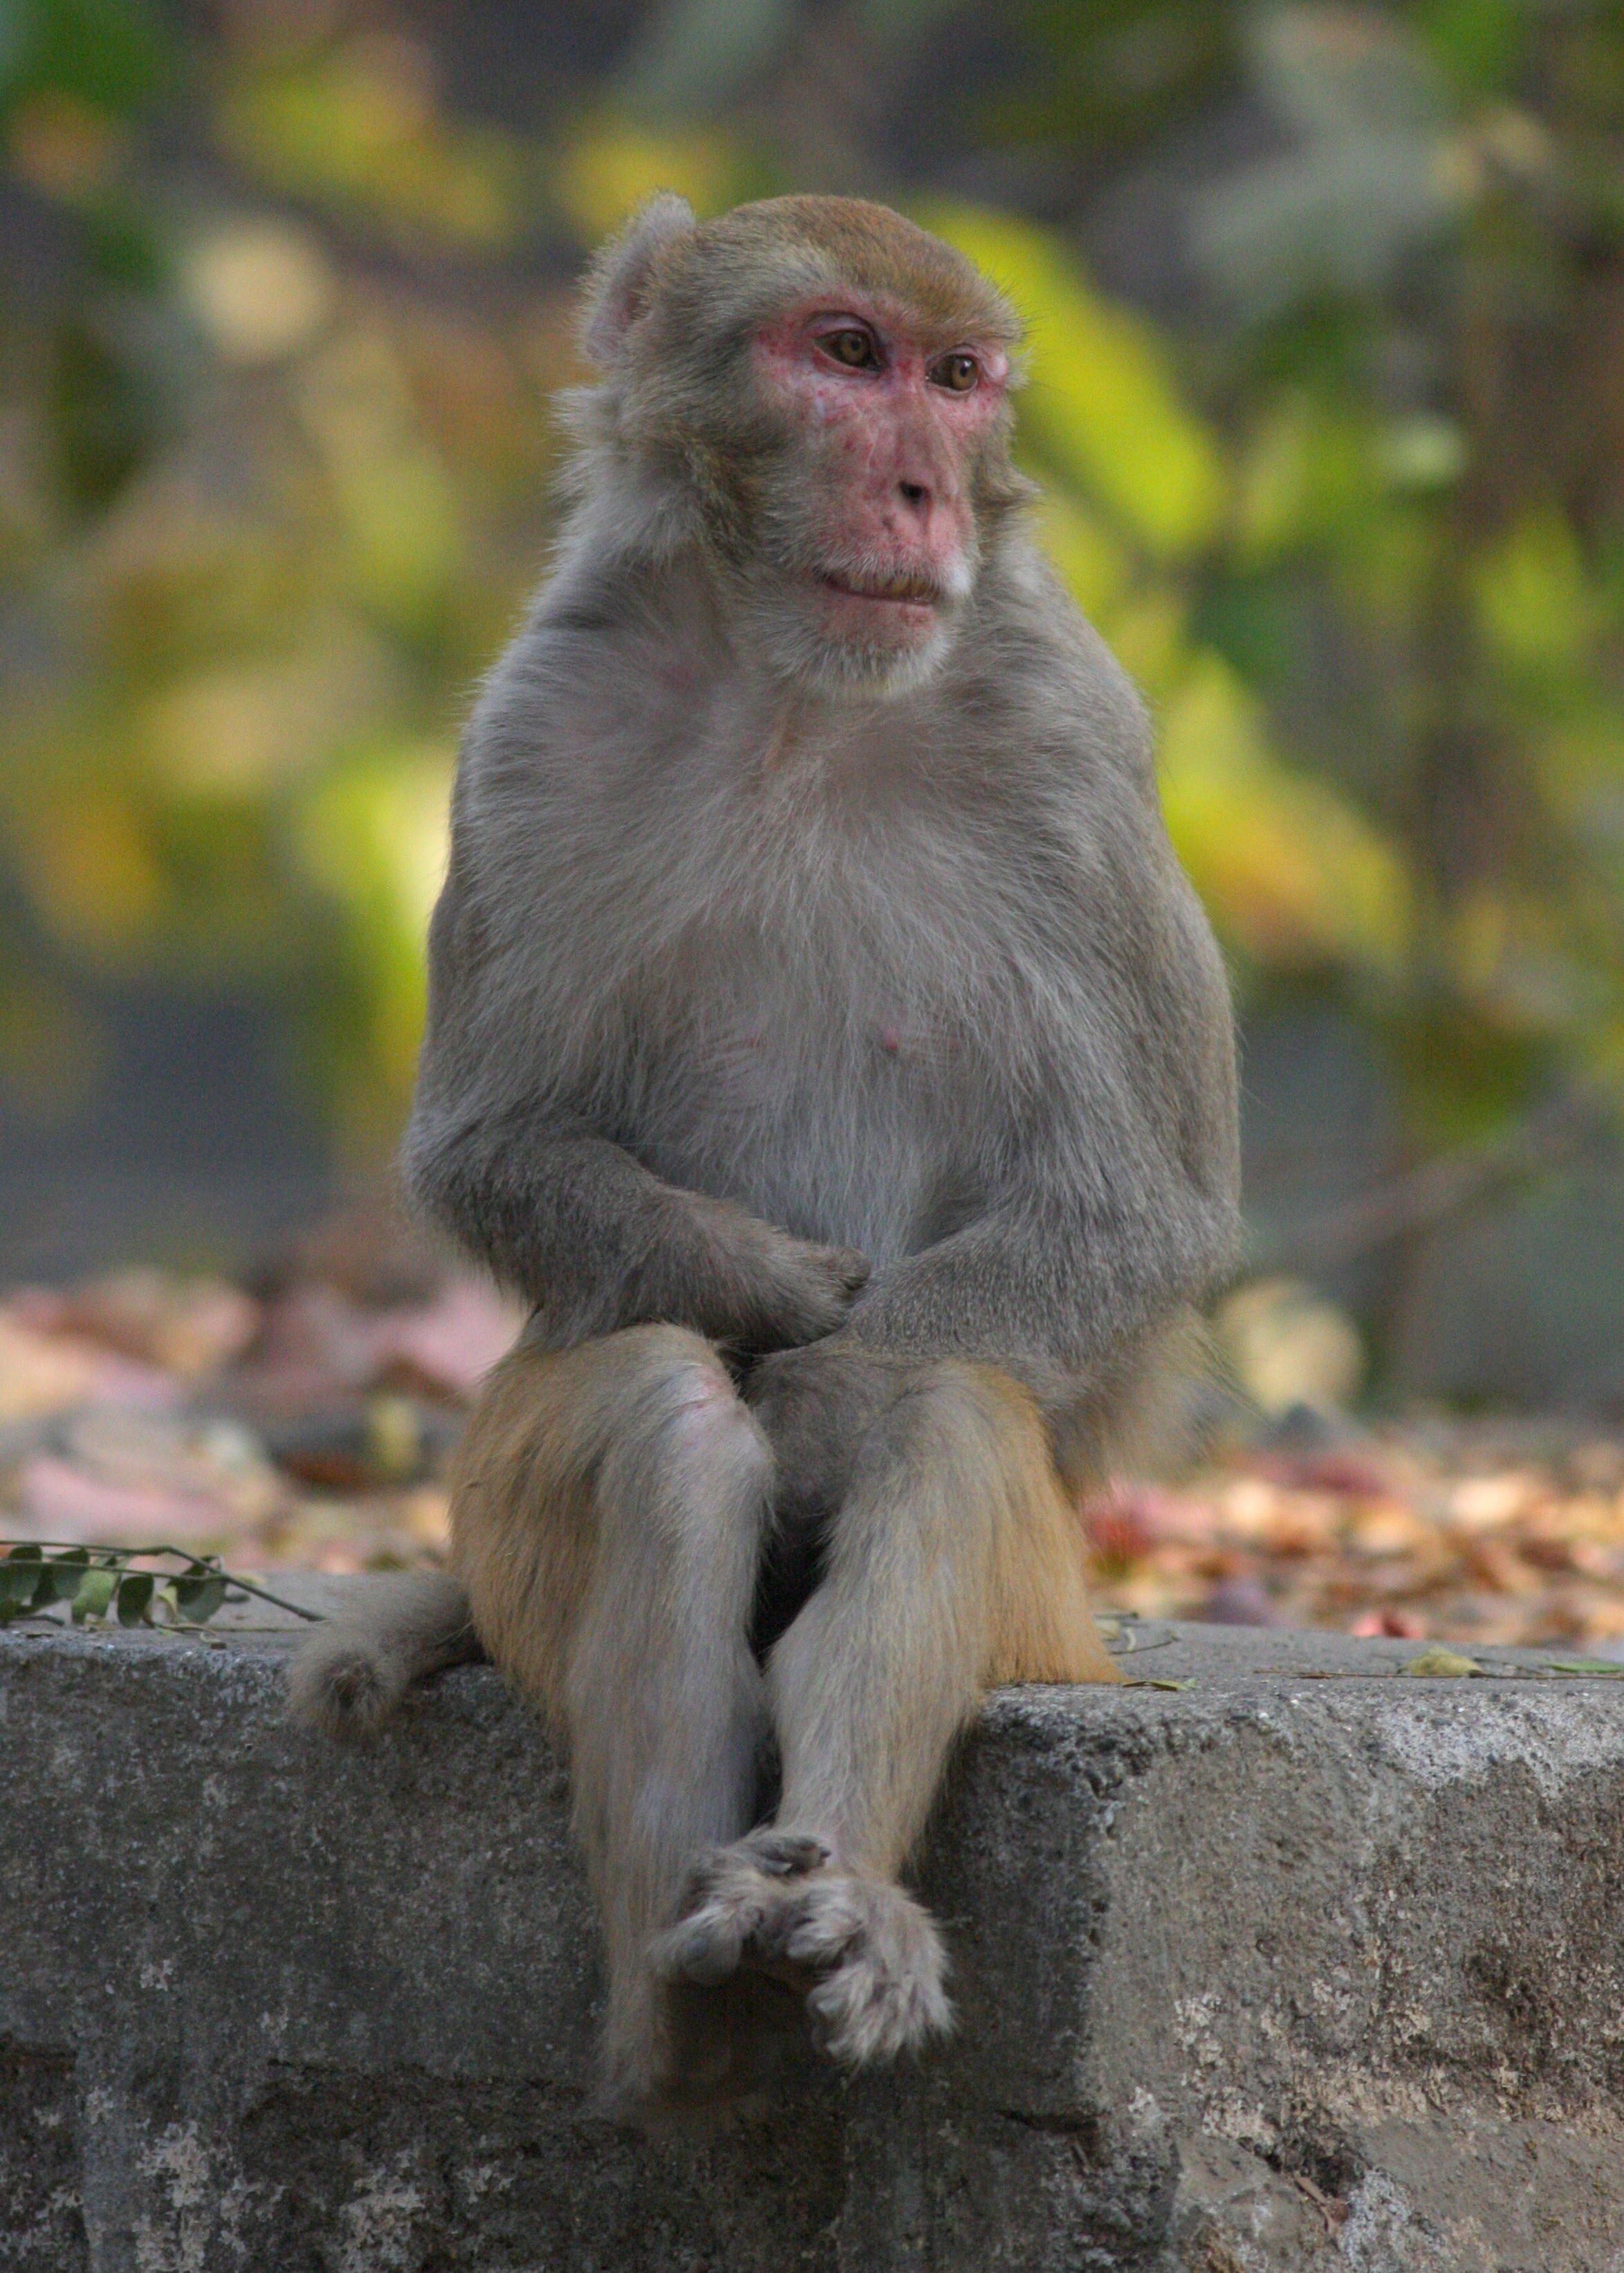 Monkeys of Mumbai | The Drinking Bird